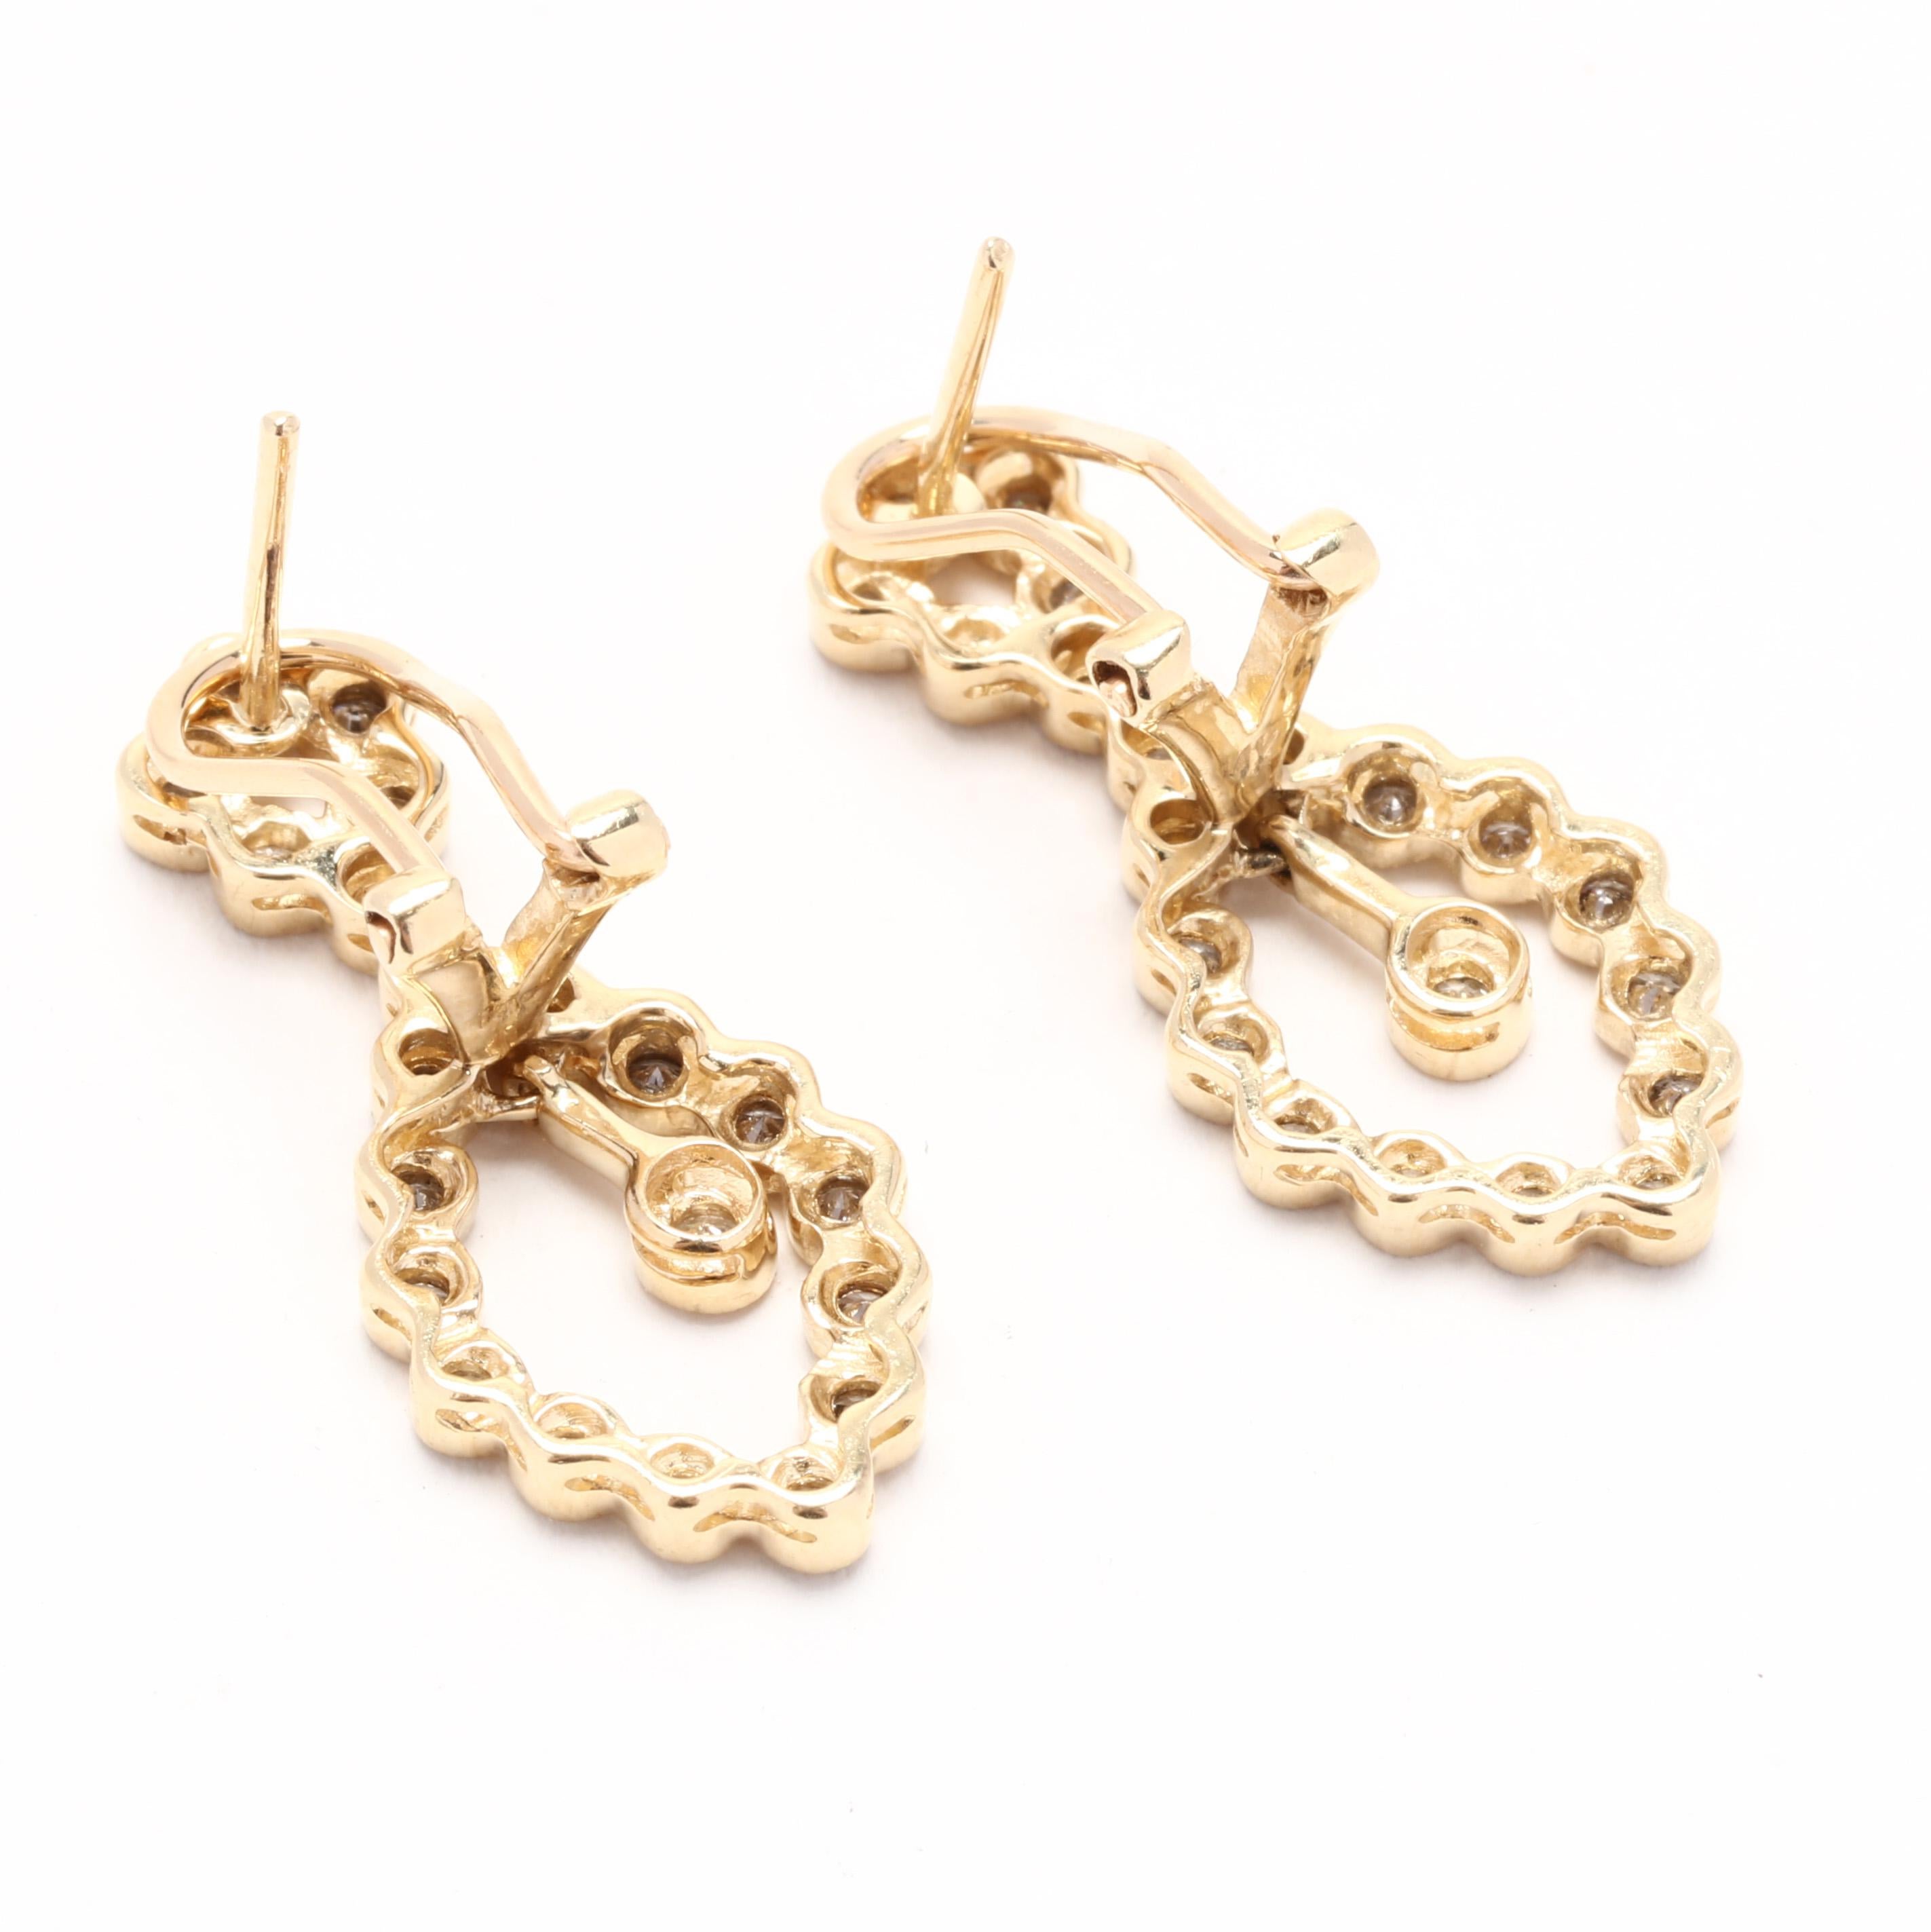 Verleihen Sie Ihrem Look einen Hauch von Eleganz mit diesen diamantenen Ohrringen mit einem Gewicht von 0,75 ct, die an einem Ohrring baumeln. Die aus 14 Karat Gelbgold gefertigten Ohrringe sind mit einer atemberaubenden Ansammlung von Diamanten